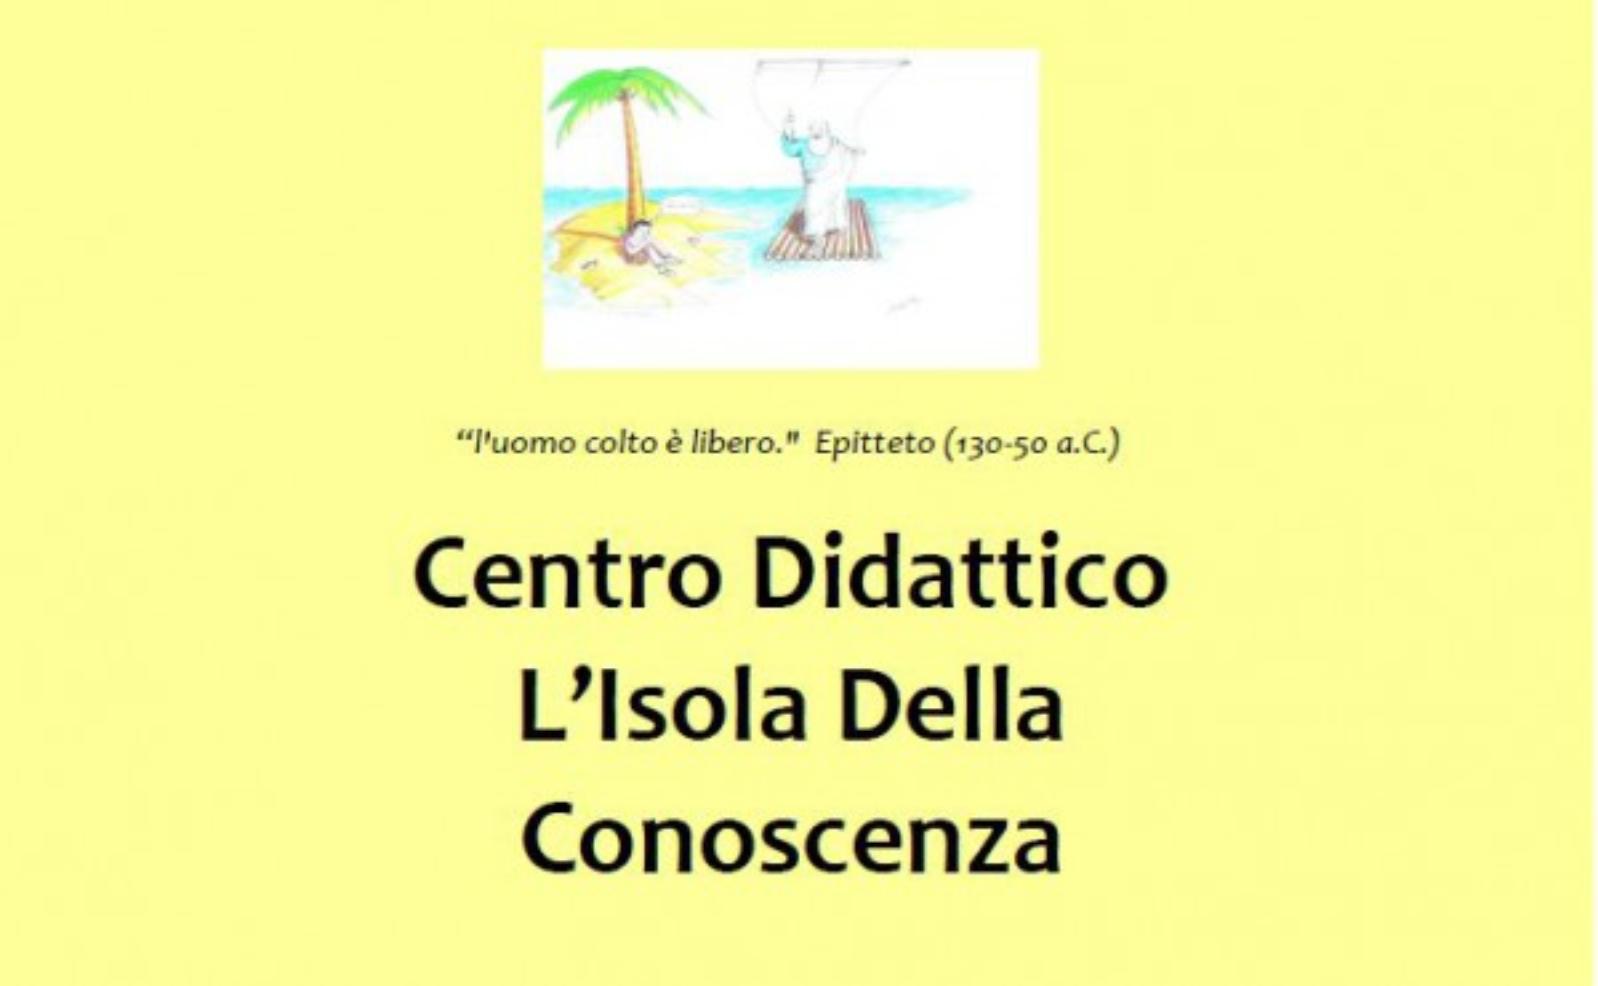 Centro Didattico L'Isola Della Conoscenza